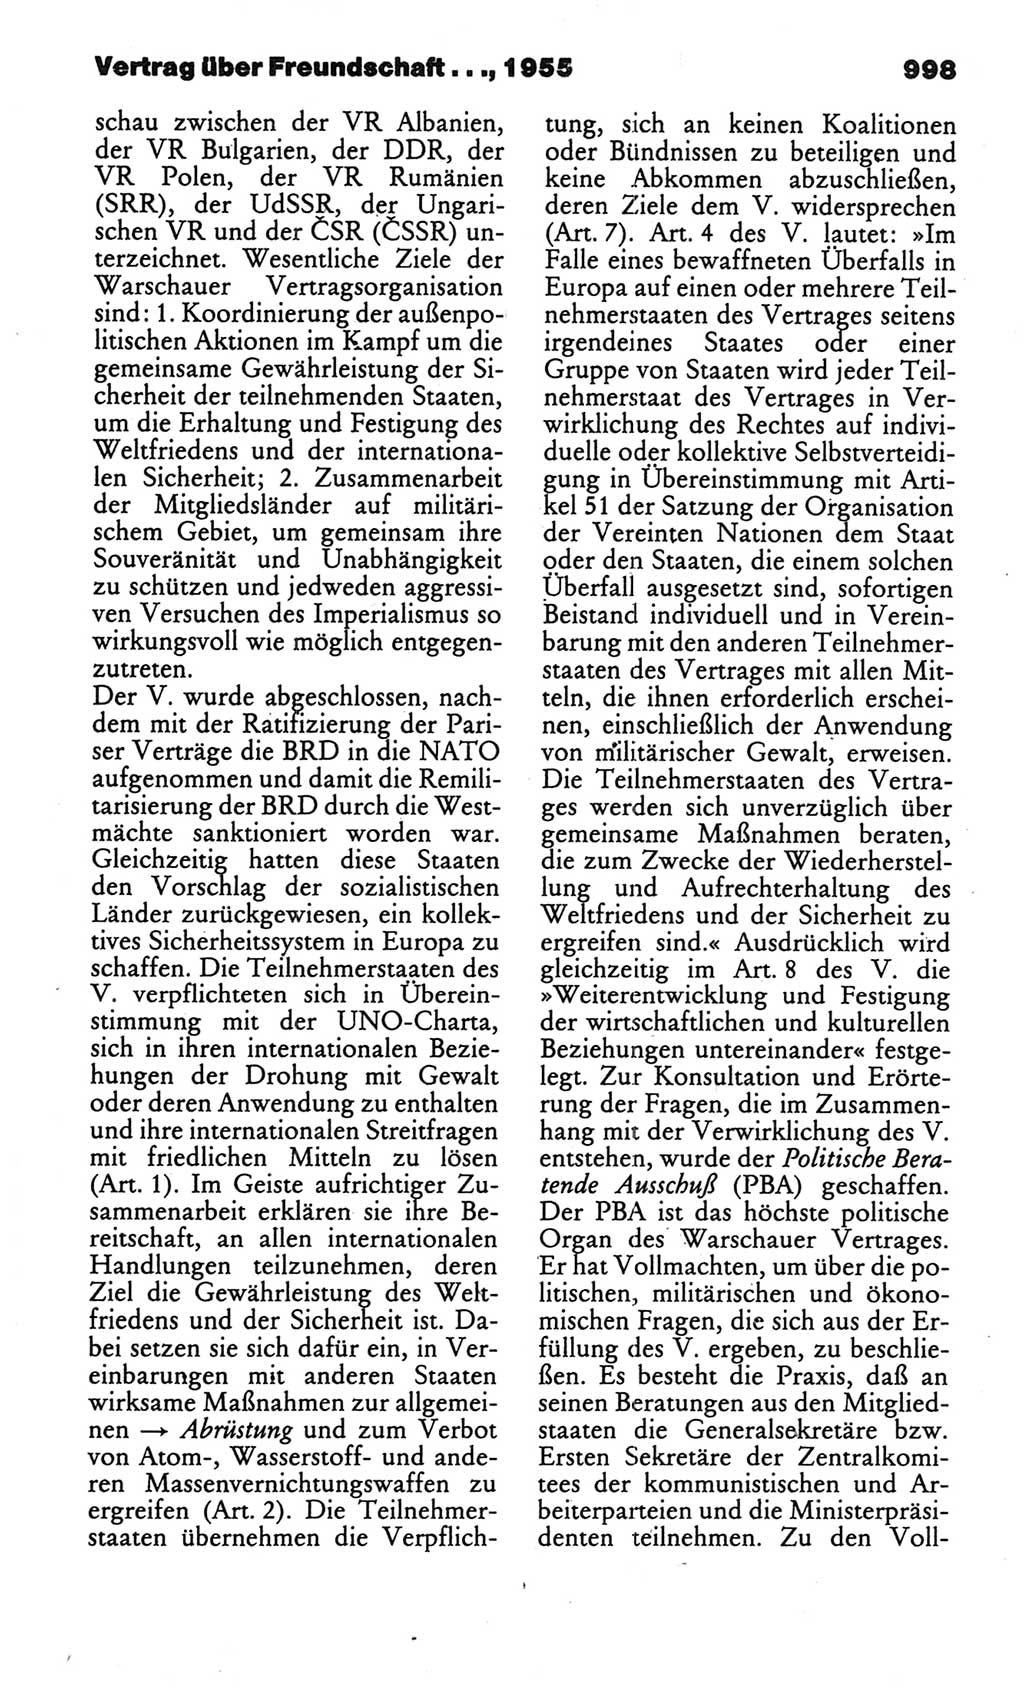 Kleines politisches Wörterbuch [Deutsche Demokratische Republik (DDR)] 1986, Seite 998 (Kl. pol. Wb. DDR 1986, S. 998)